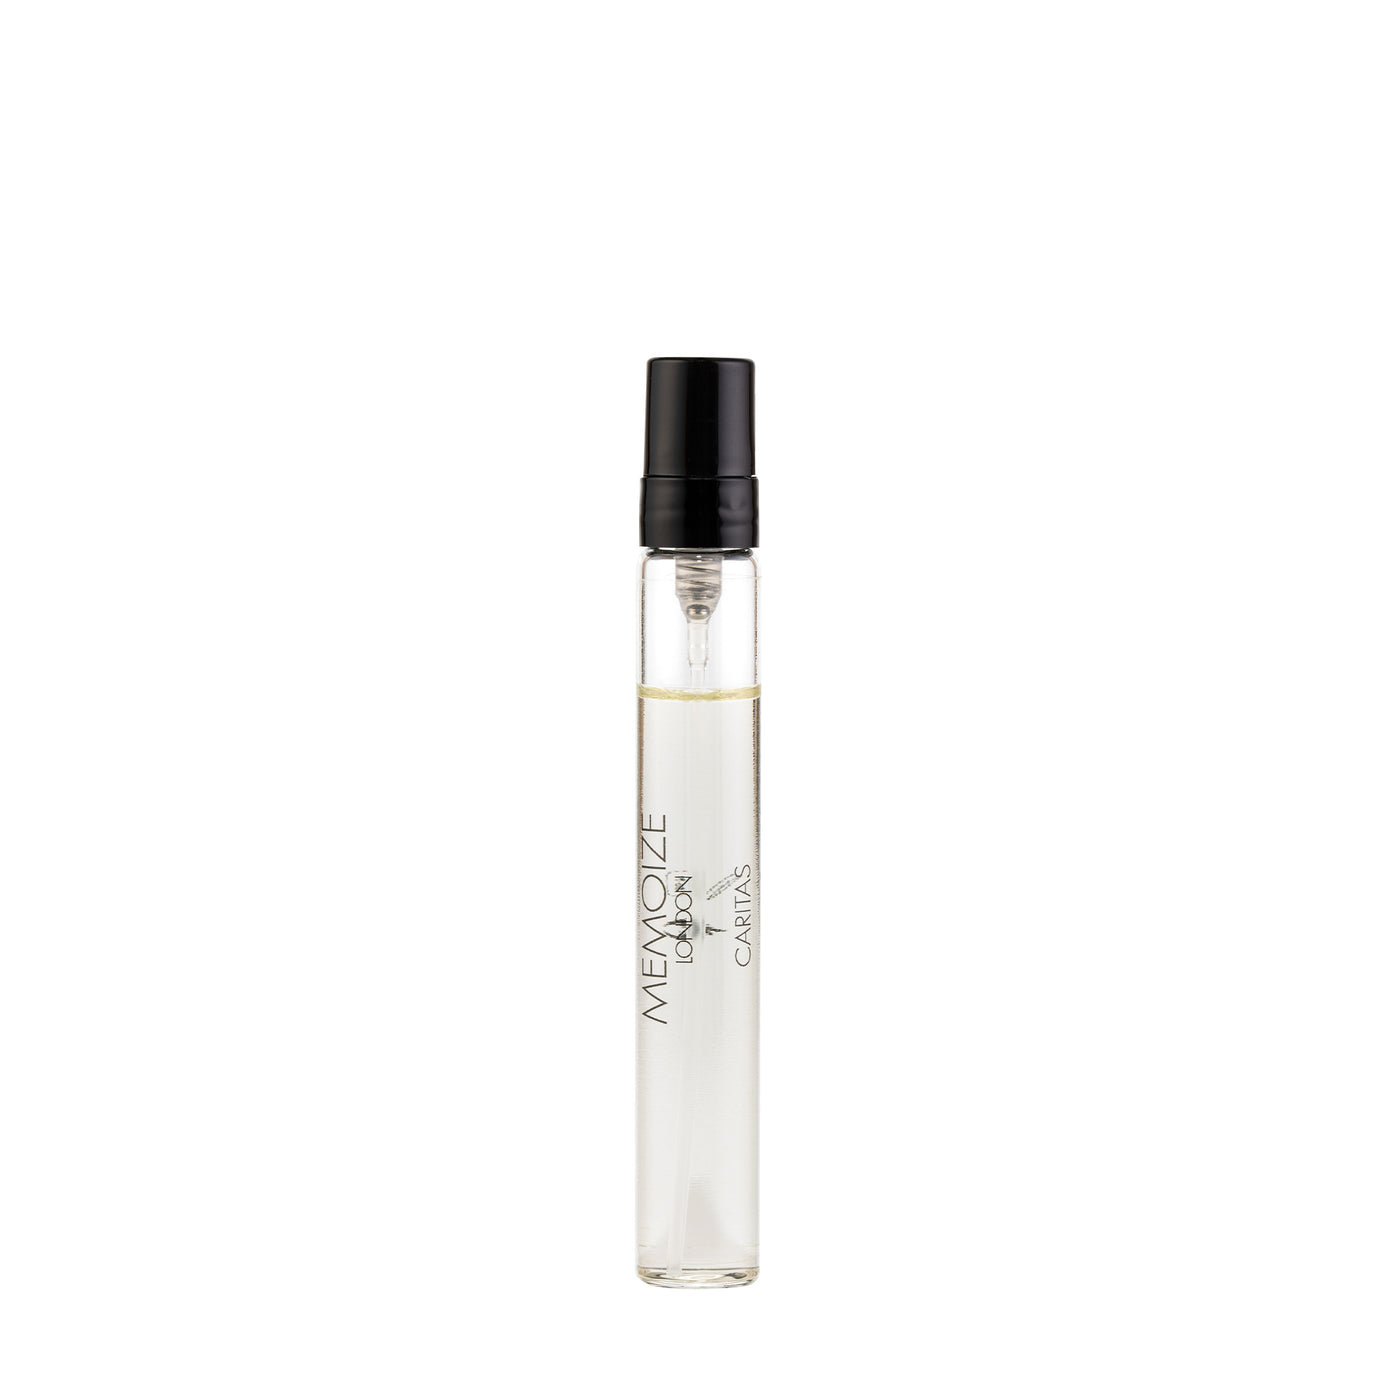 Memoize London CARITAS Extait de Parfum 7.5ml